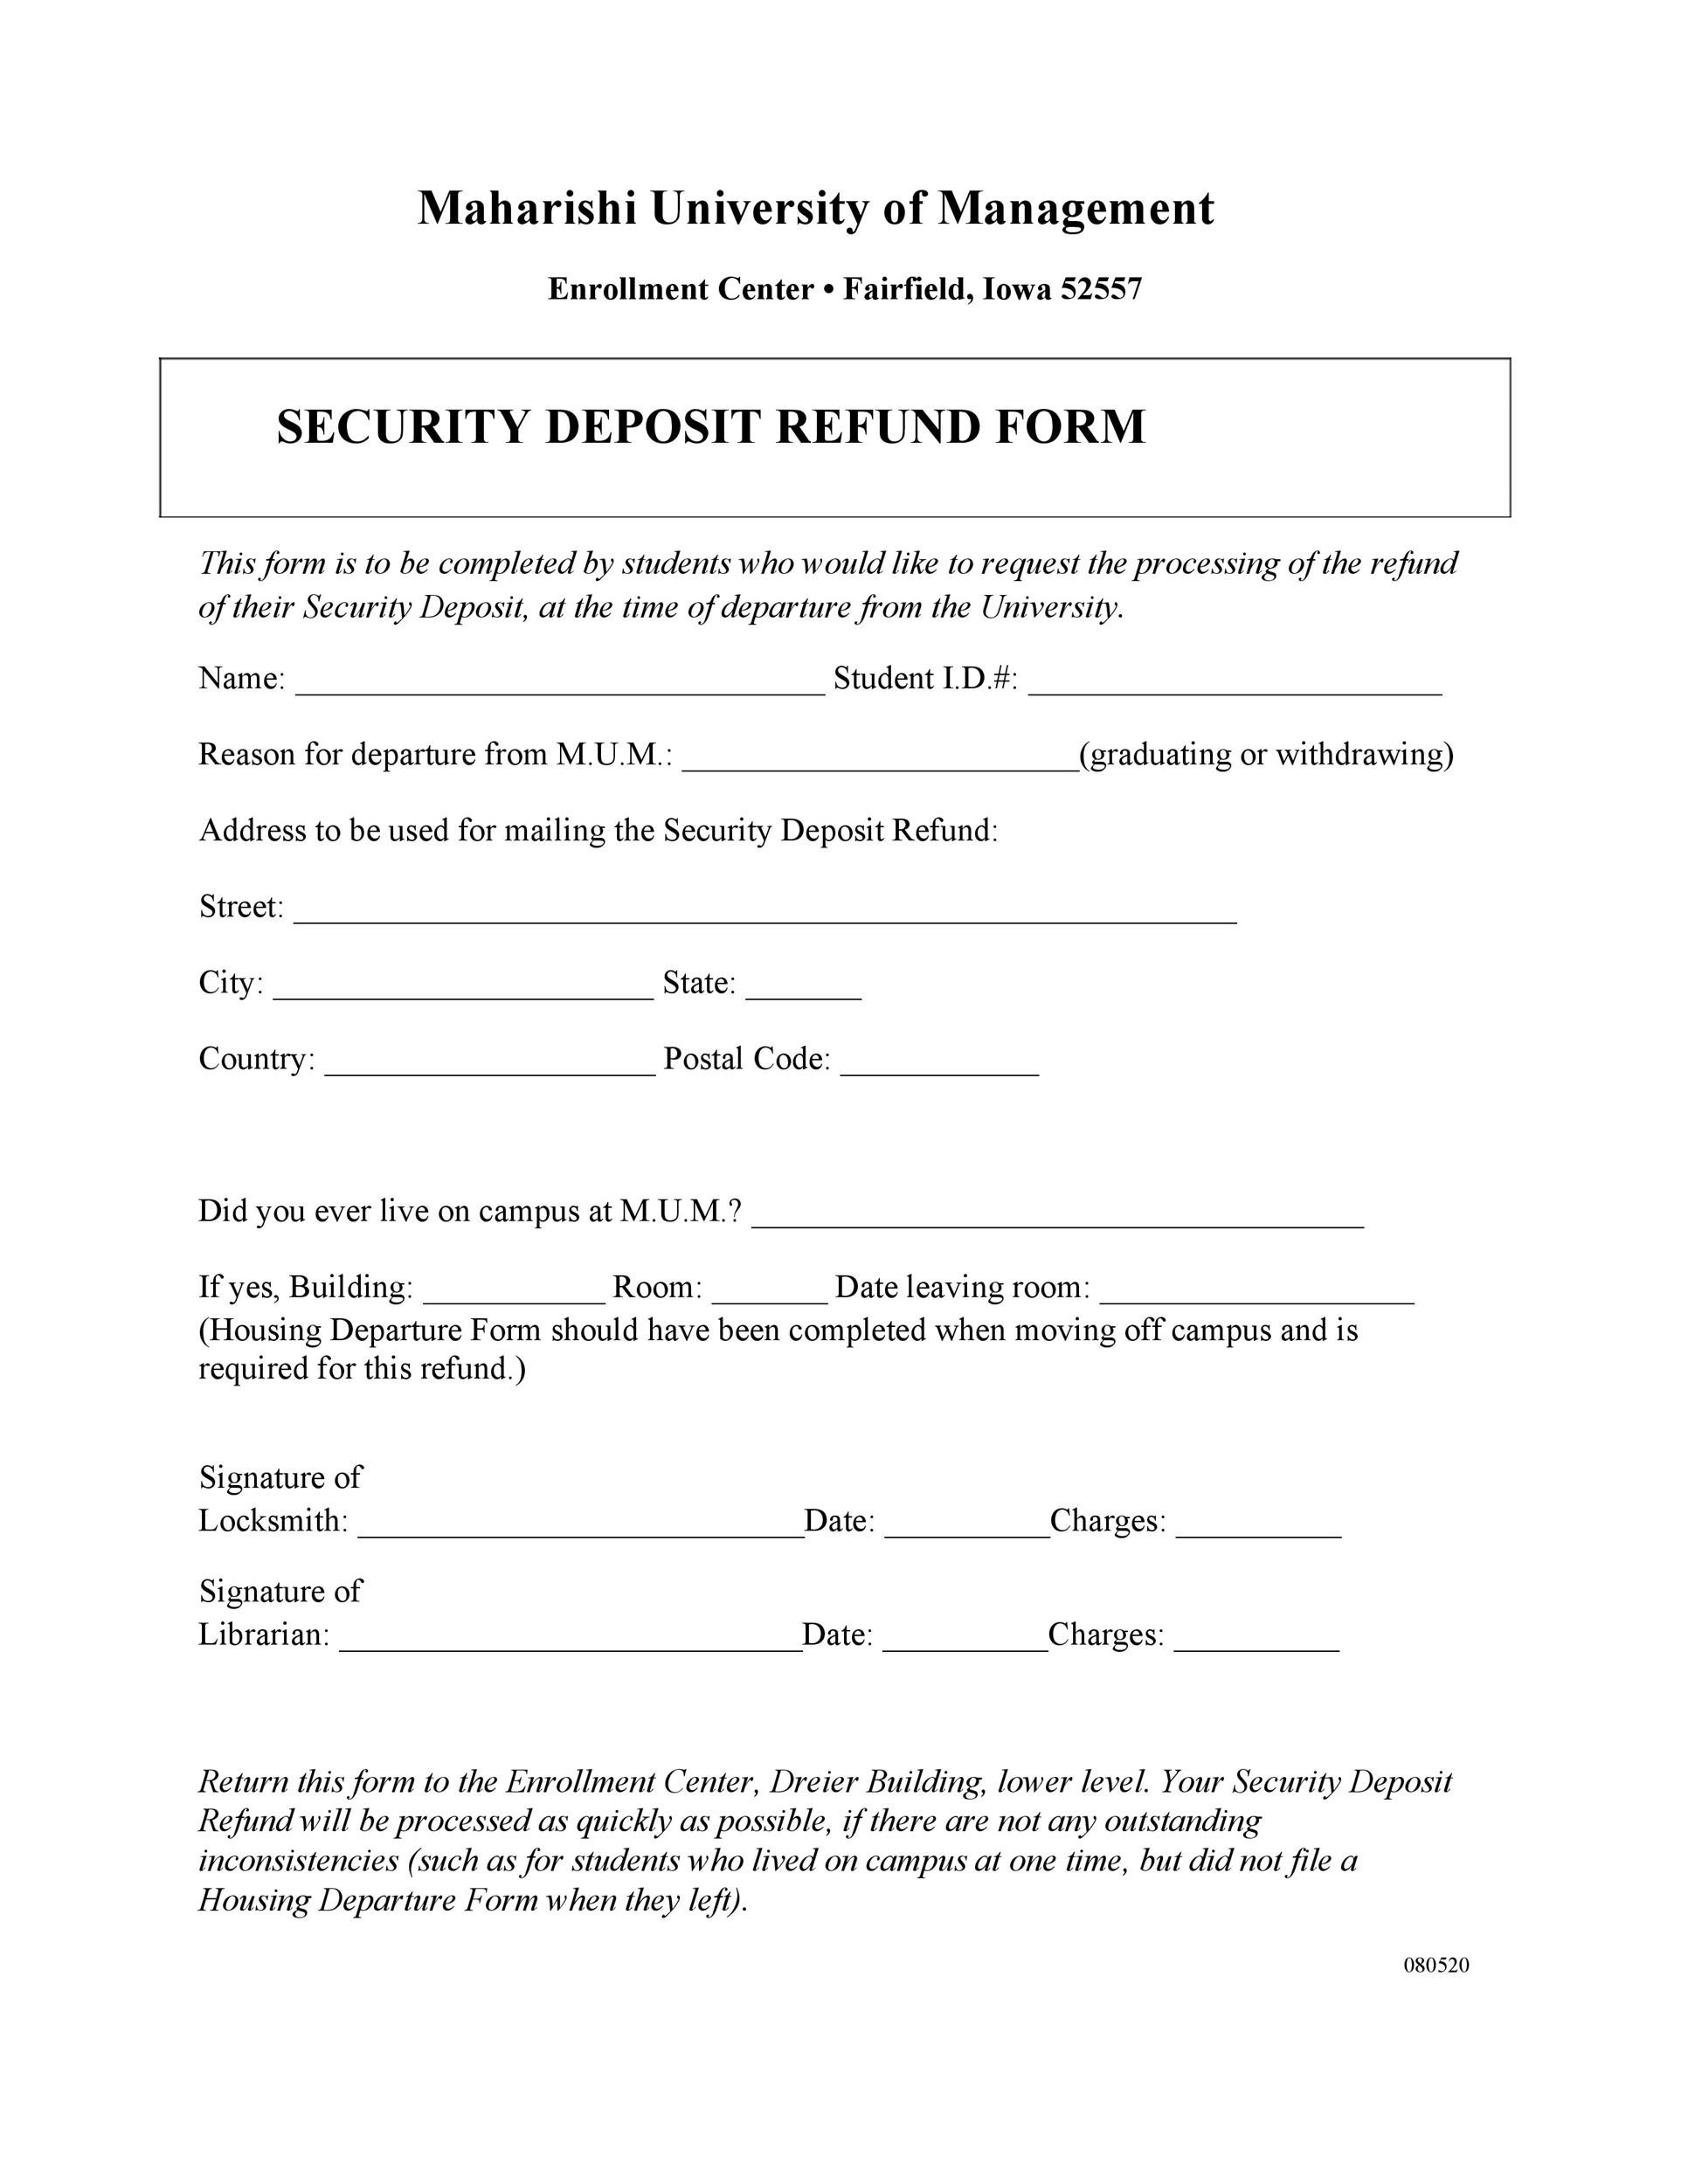 10 Effective Security Deposit Return Letters [MS Word] ᐅ TemplateLab Regarding Return Of Security Deposit Form Letter Regarding Return Of Security Deposit Form Letter